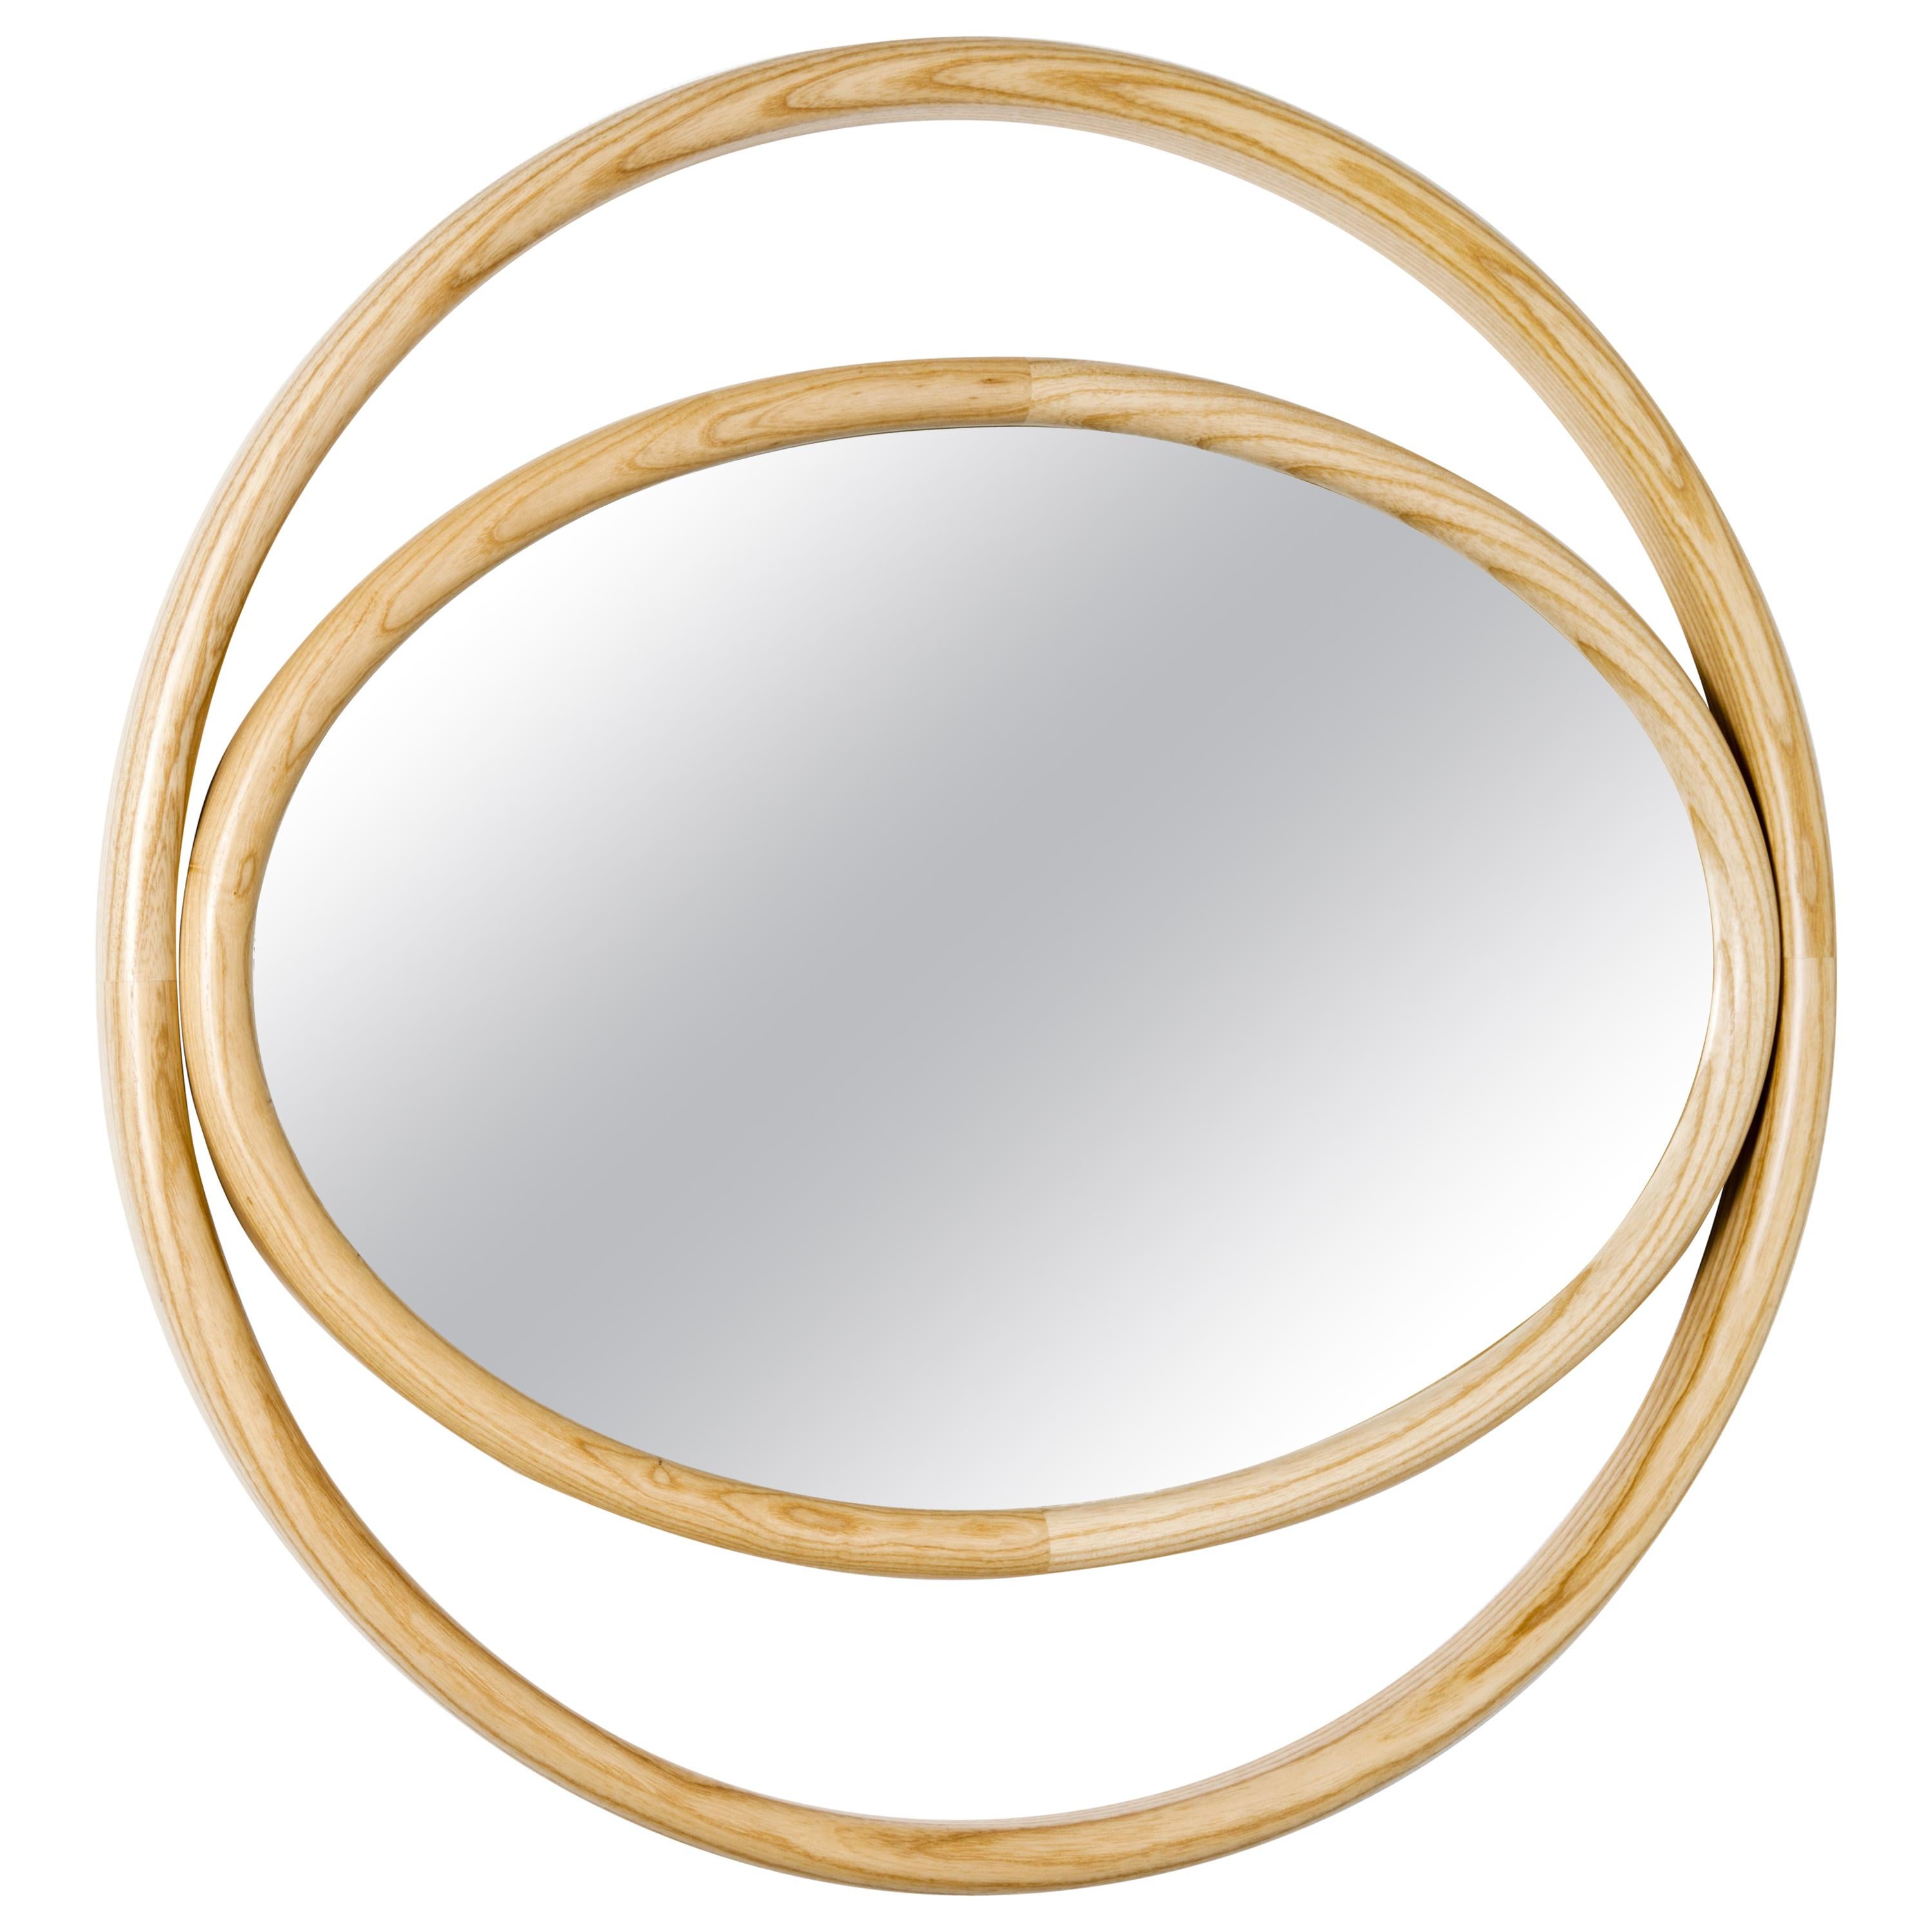 Gebrüder Thonet Vienna GmbH Eyeshine Large Circular Mirror with Ash Wood Frame